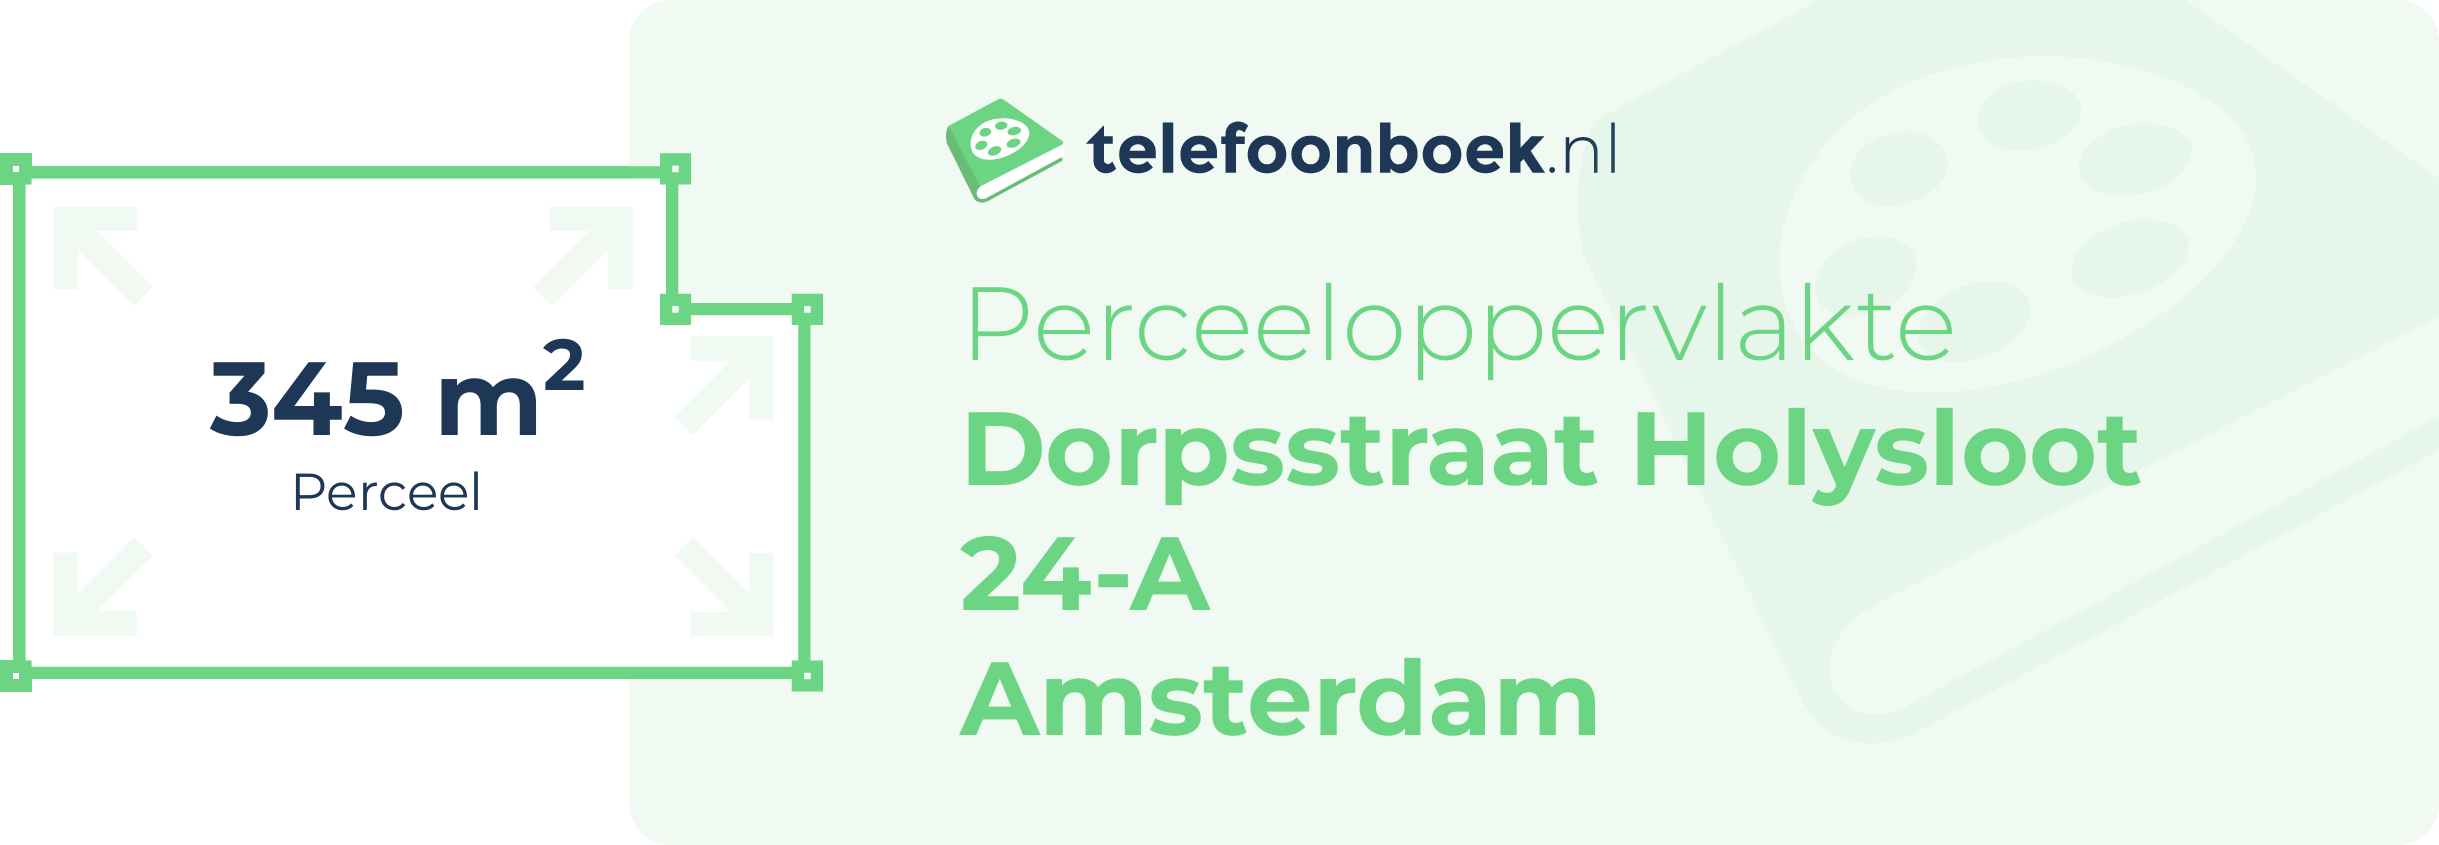 Perceeloppervlakte Dorpsstraat Holysloot 24-A Amsterdam